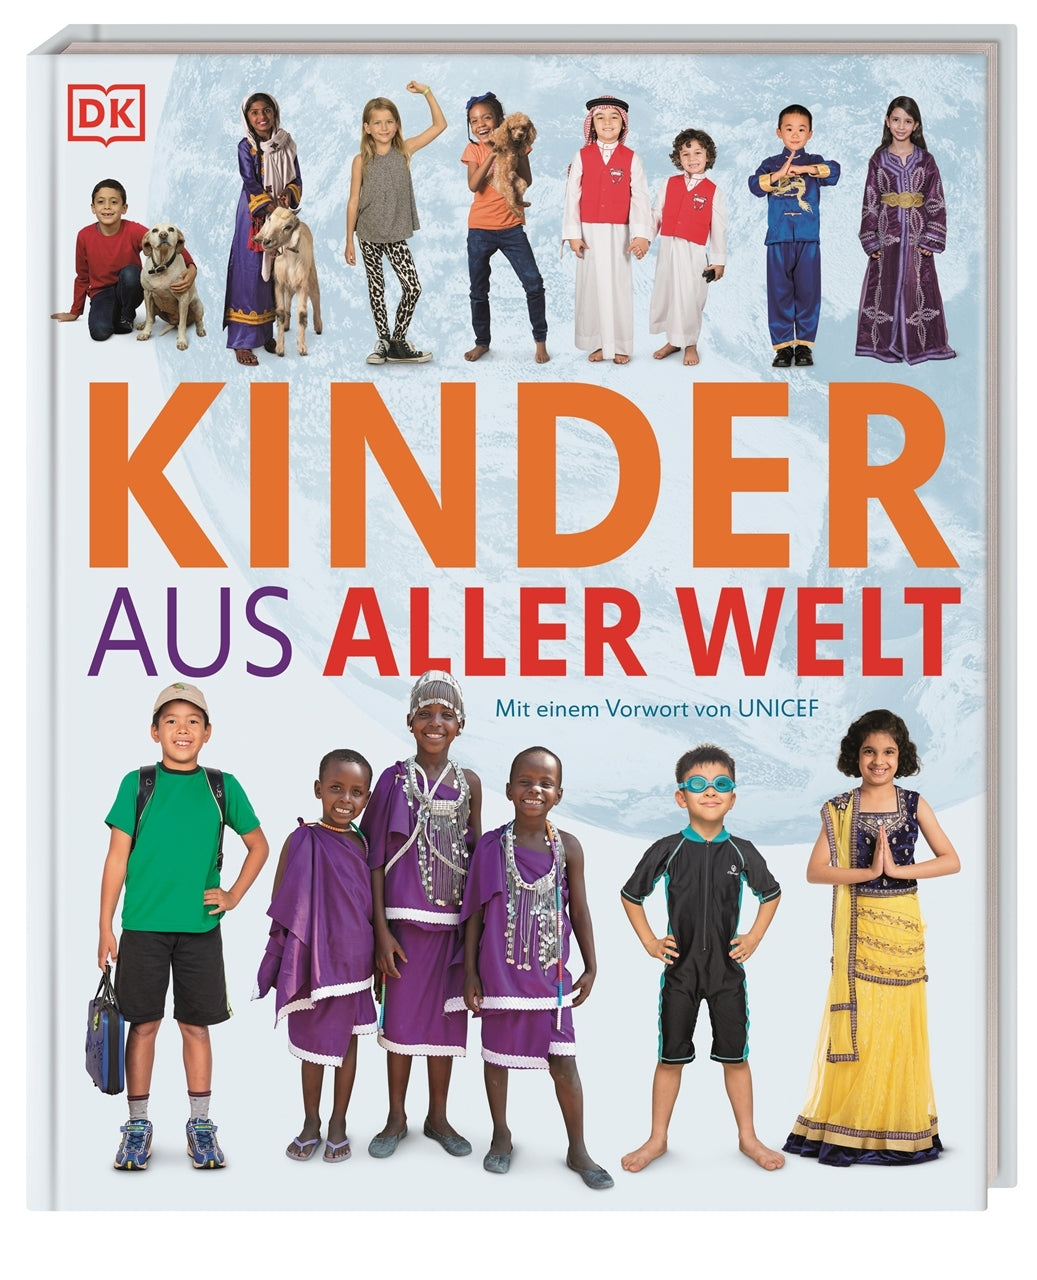 Cover vom Foto Kinderbuch "Kinder aus aller Welt". Zu sehen sind viele Kinder in unterschiedlicher Kleidung aus aller Welt.